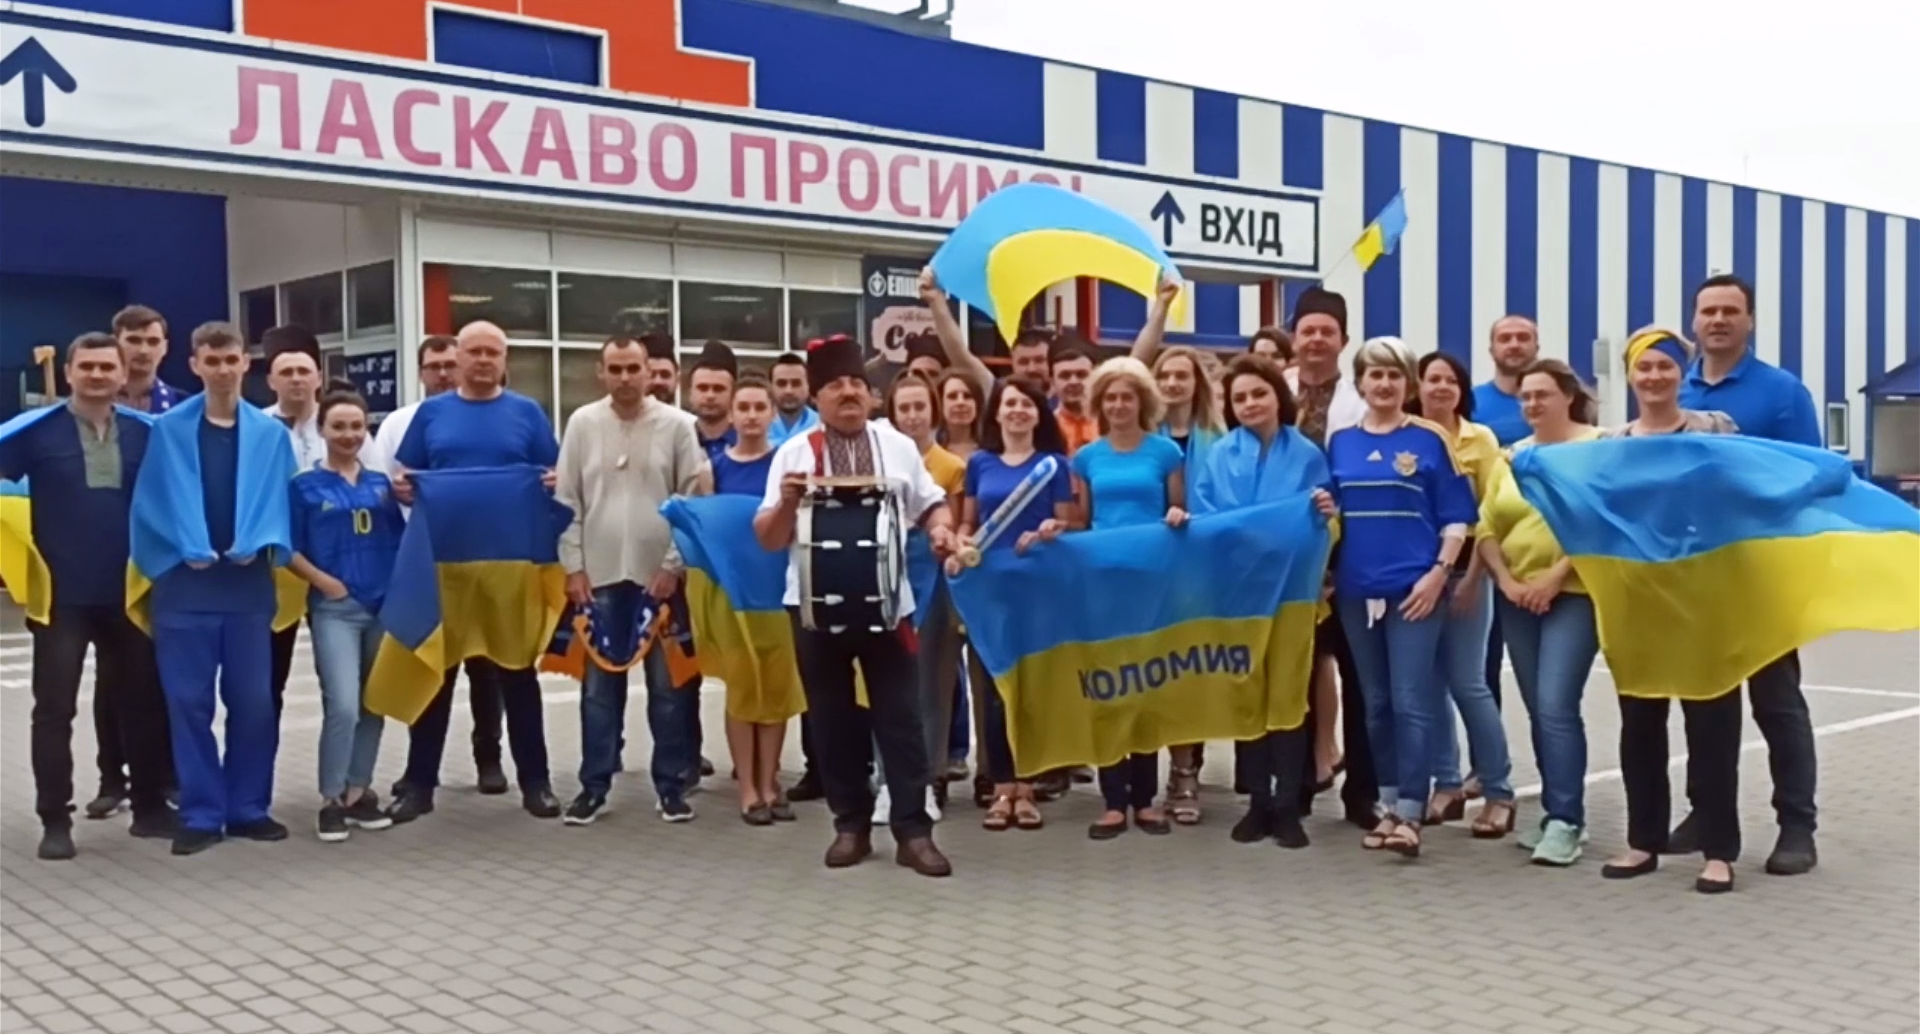 Сеть магазинов строительных материалов Эпицентр выпустил ролик в поддержку сборной Украины по футболу. ВИДЕО